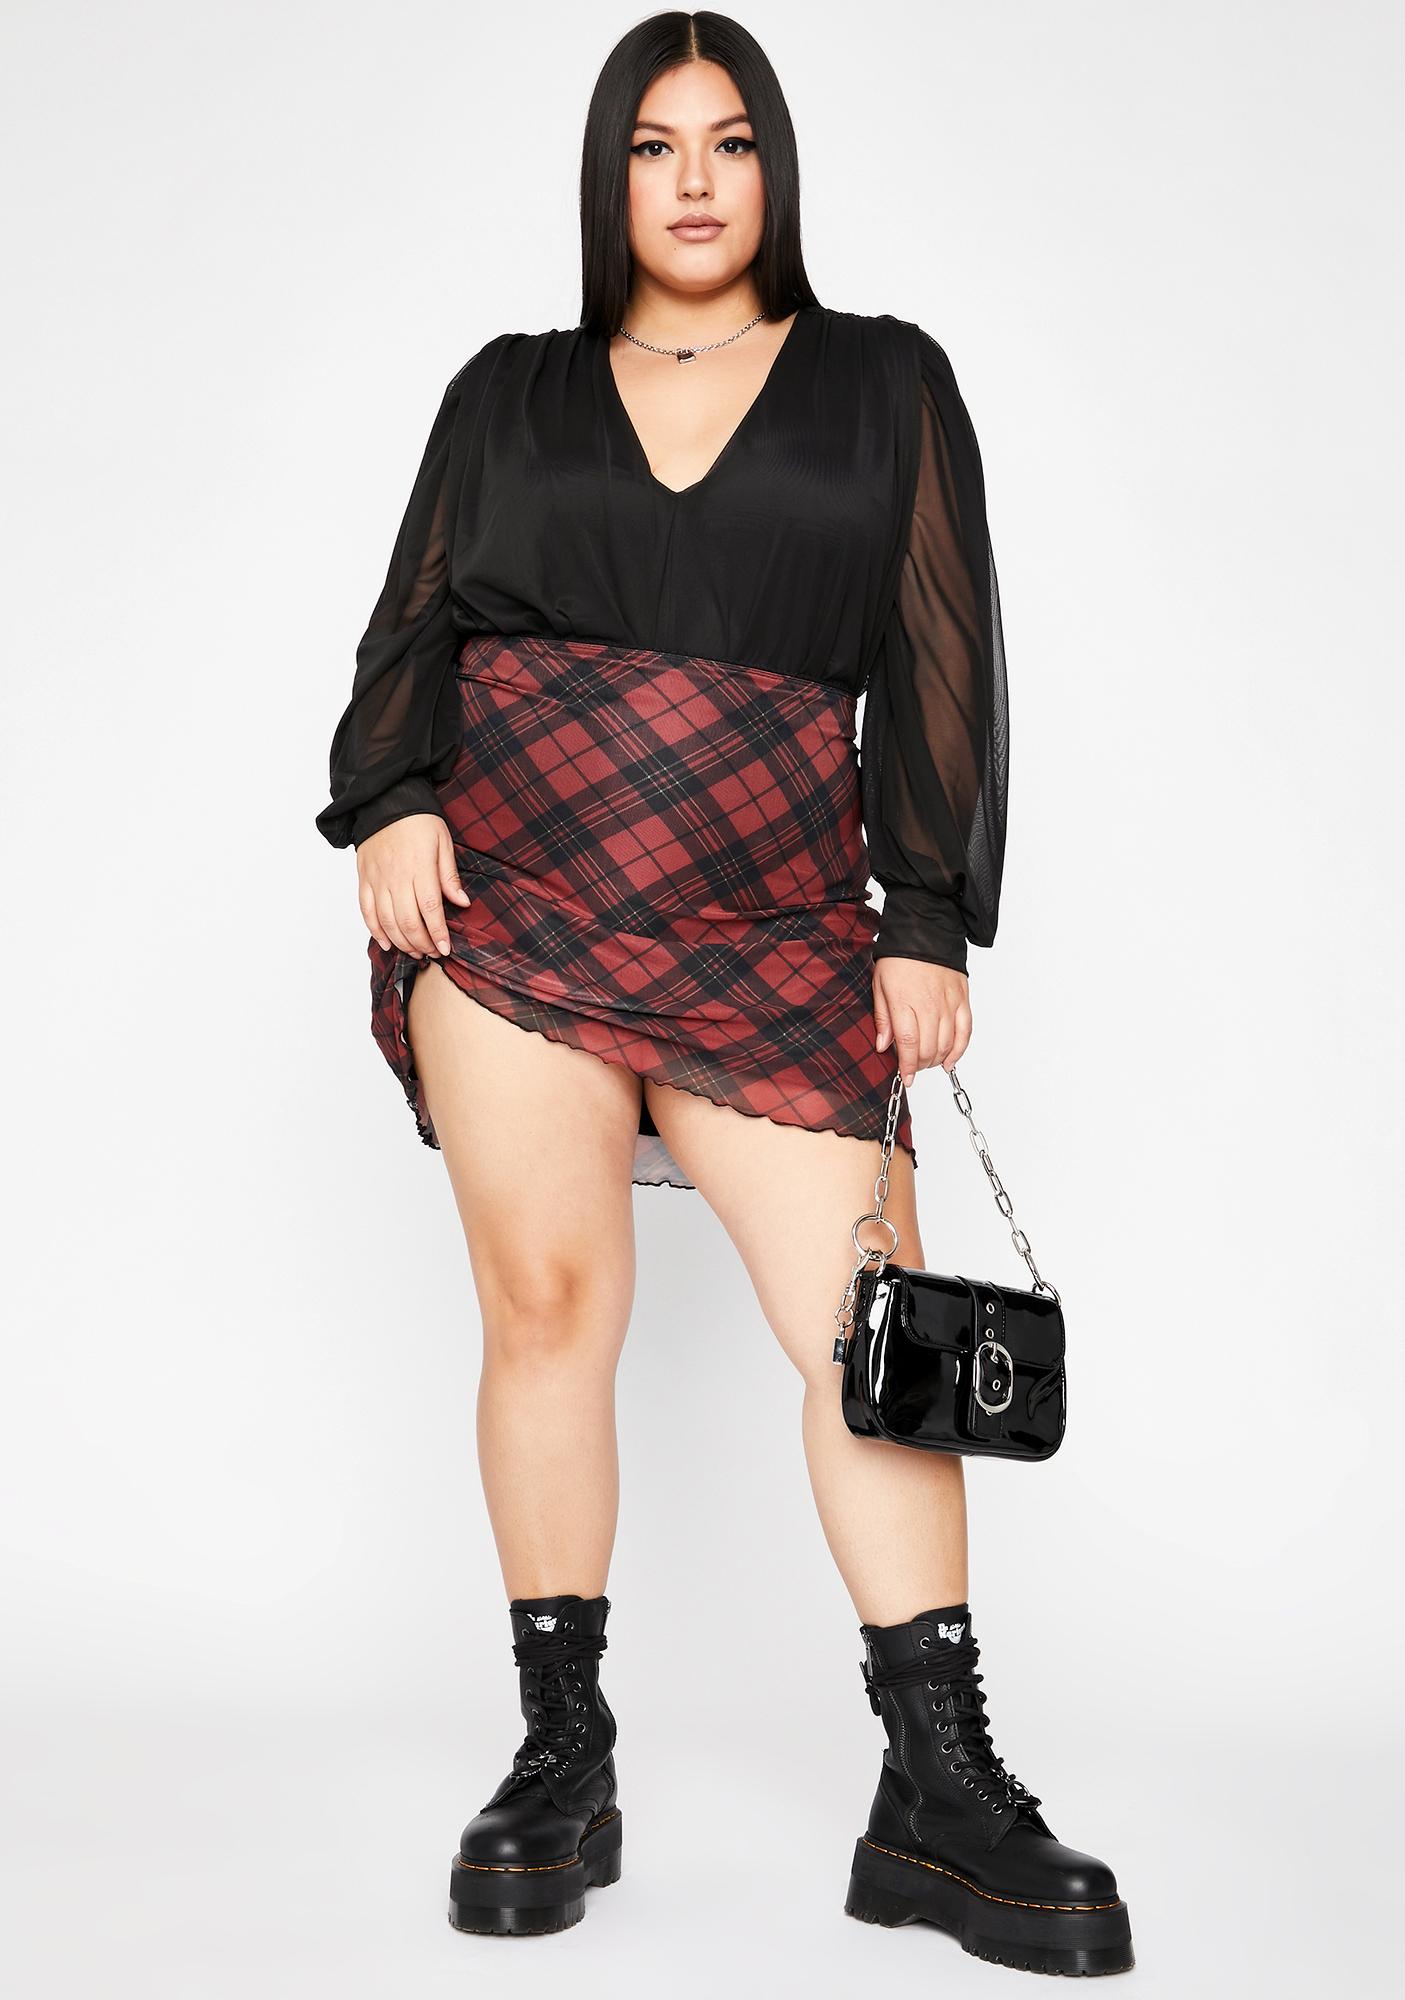 Plus Size Bodysuit Blouse Sheer Long Sleeves V-Neck Black | Dolls Kill